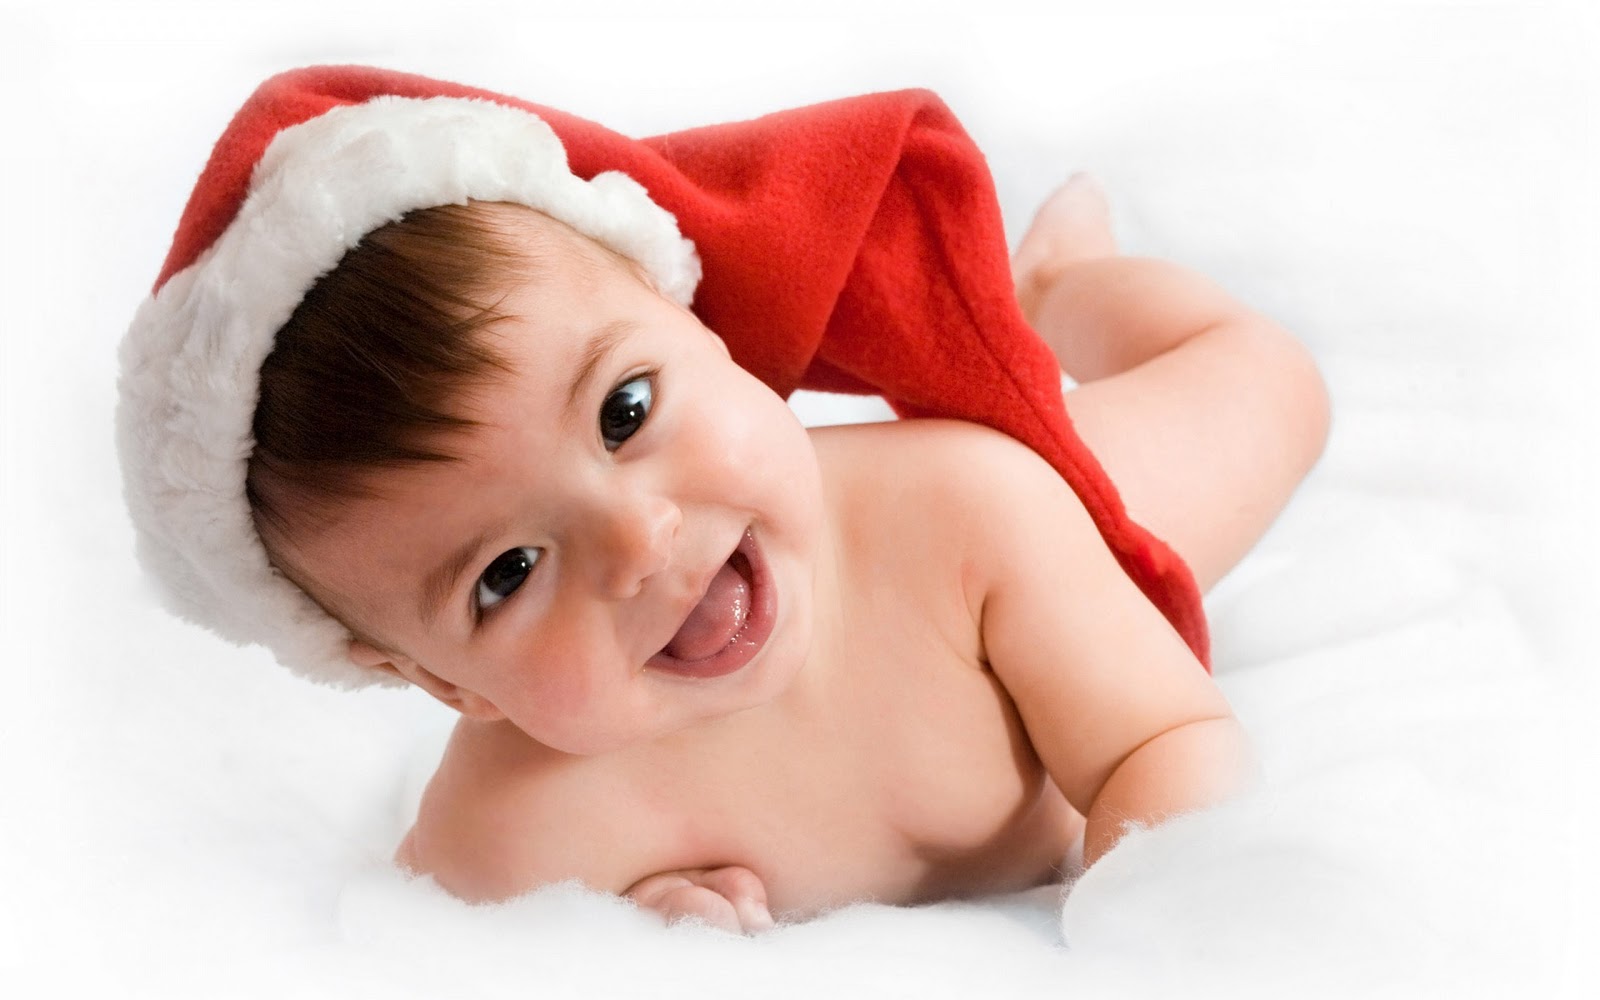 Free Sweet Cute Babies Smile Desktop Wallpapers HD